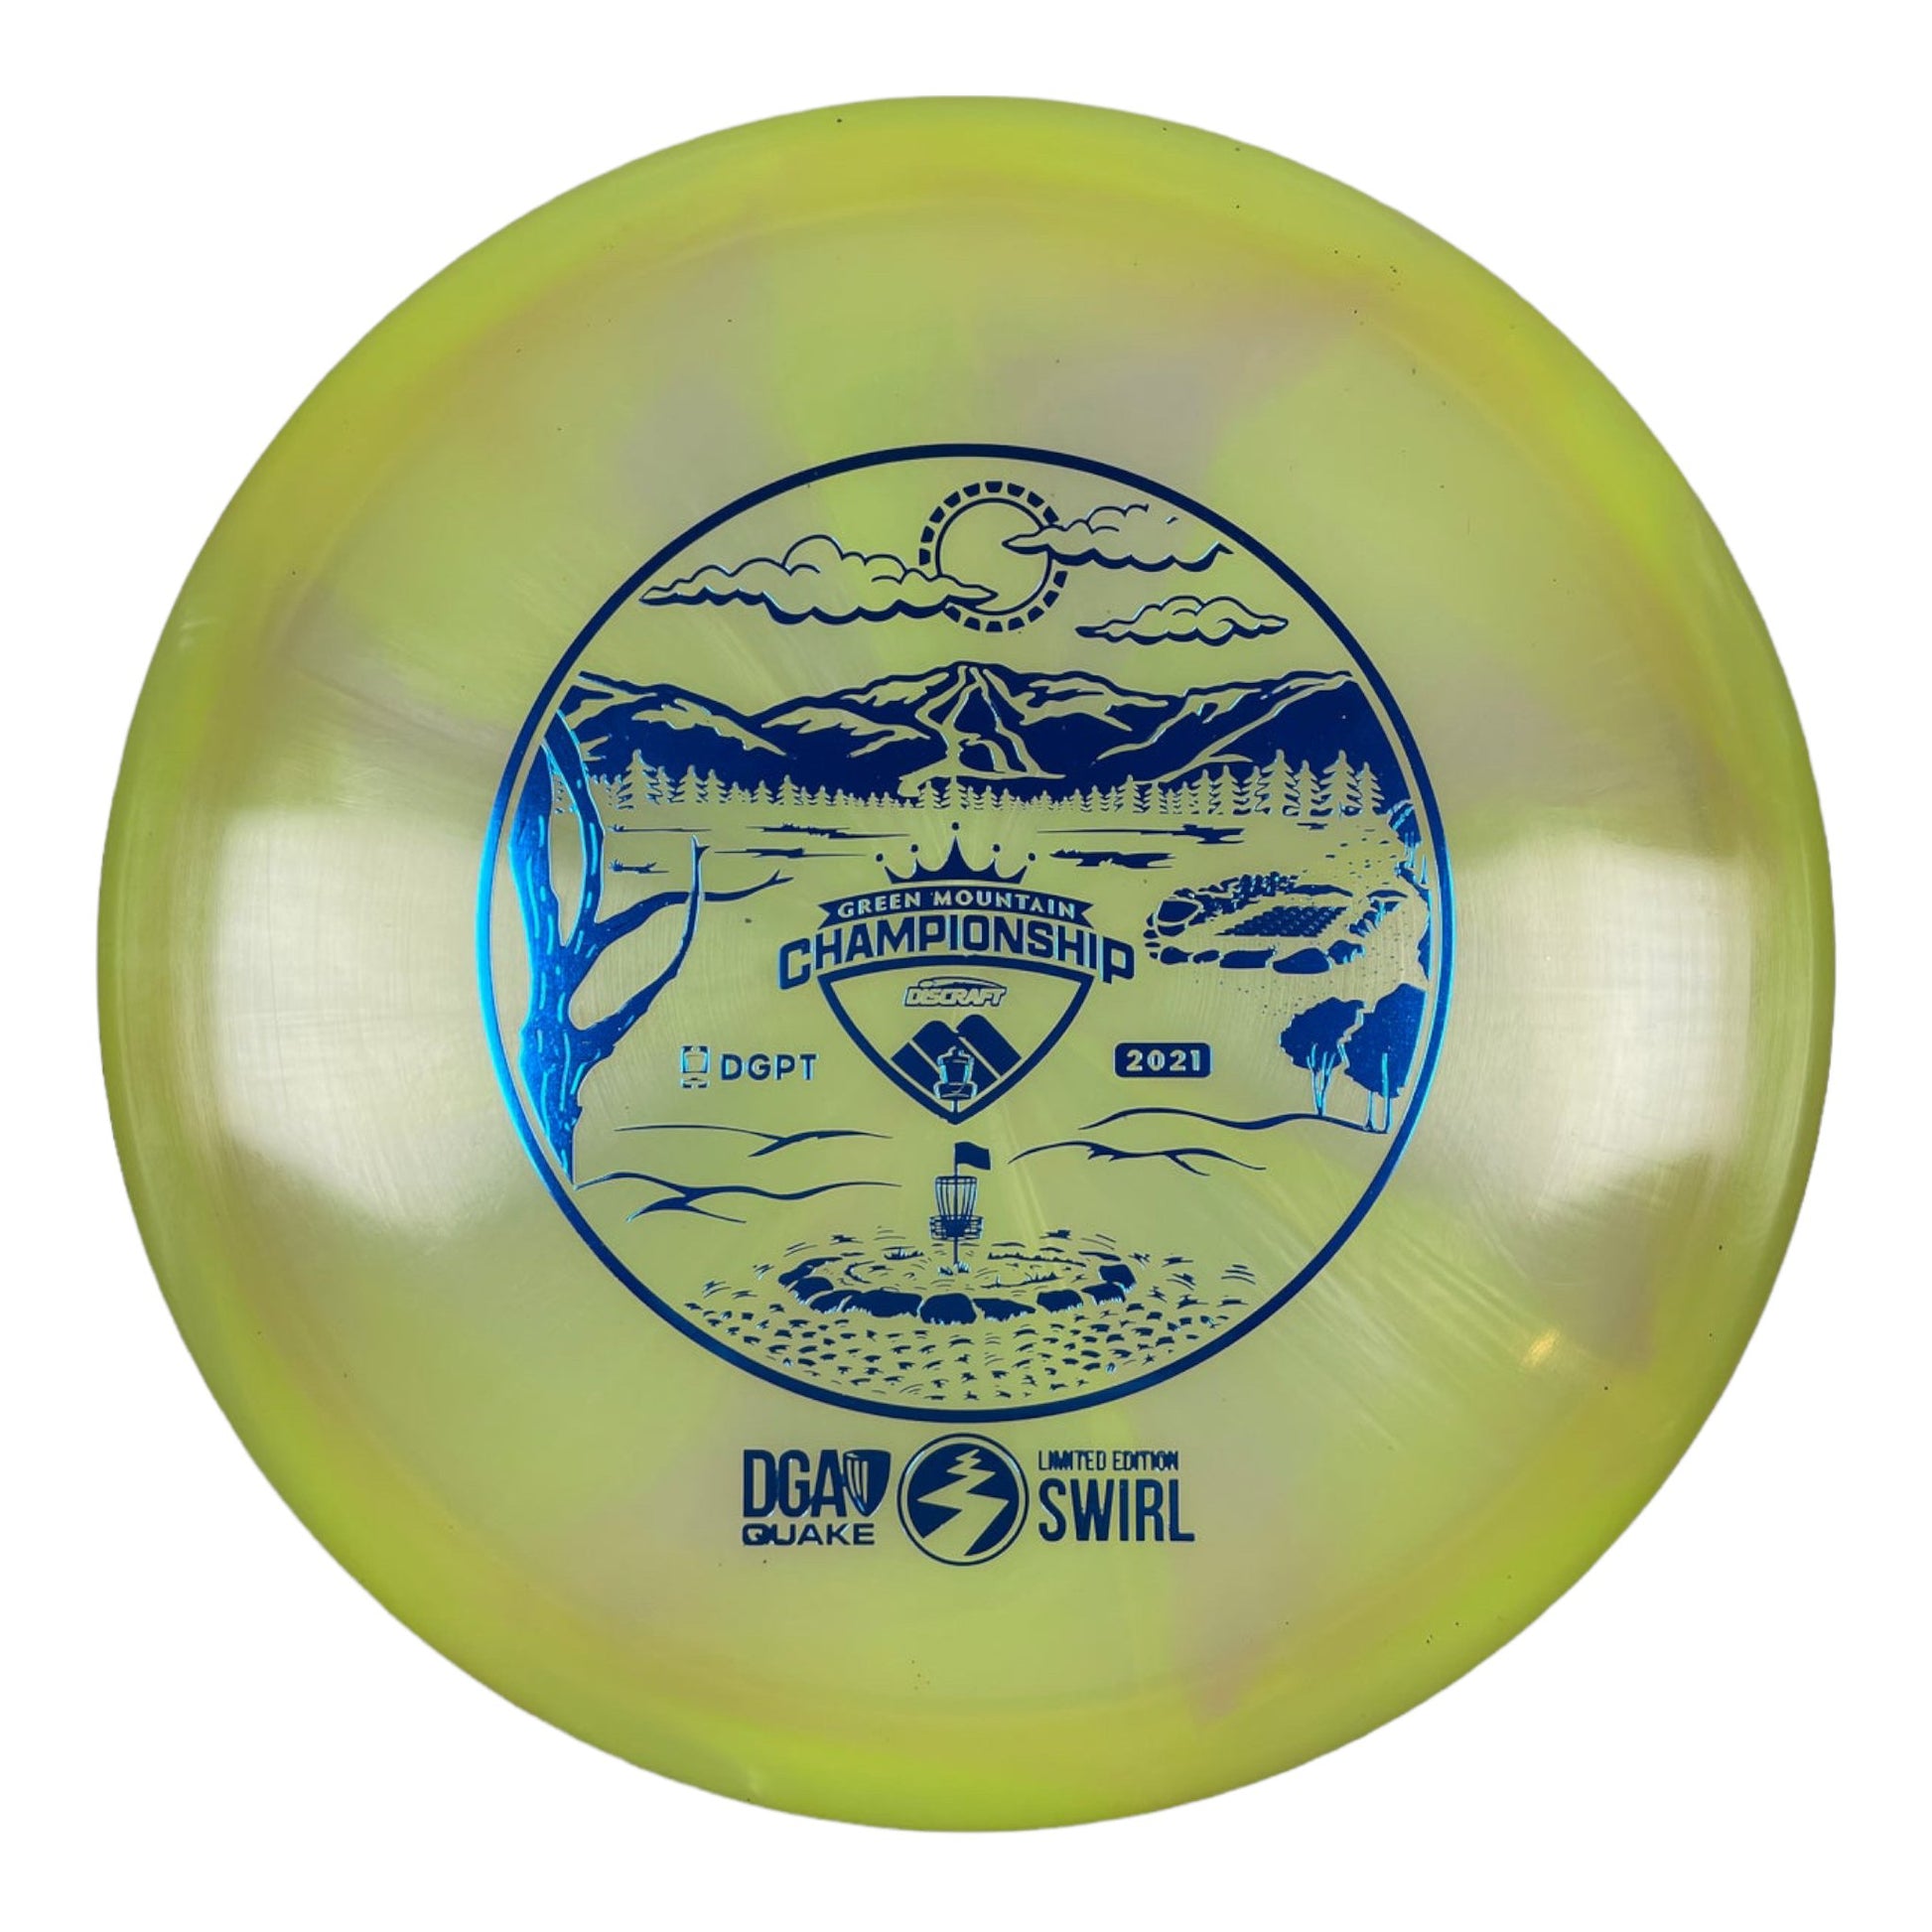 DGA Quake | Swirl | Yellow/Blue 175g Disc Golf